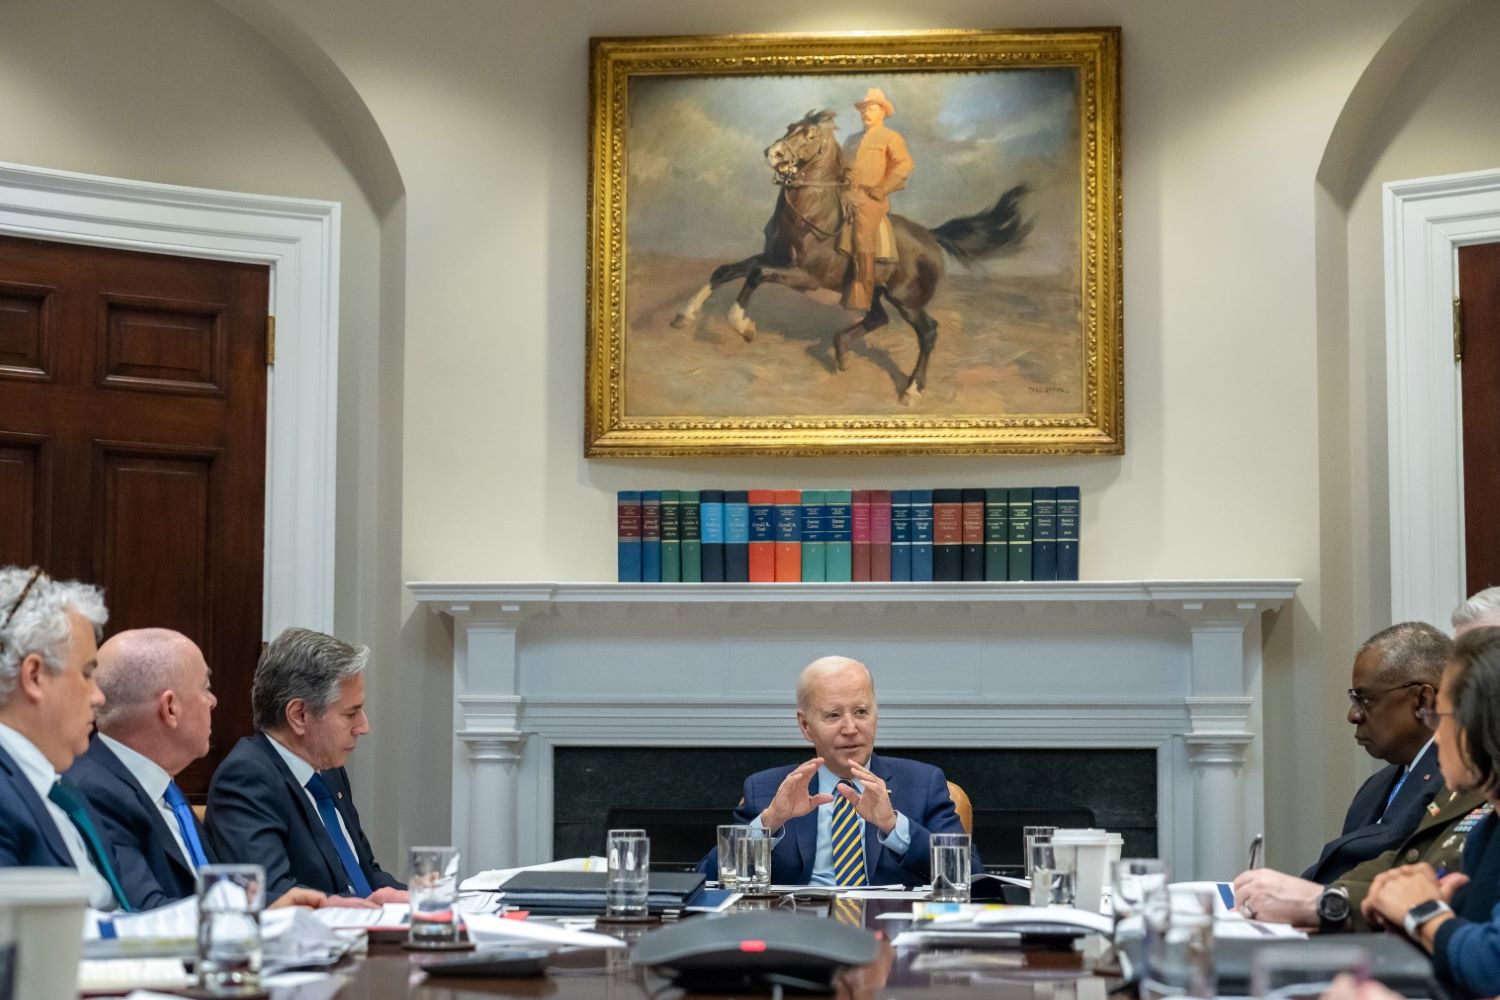 Biden is hosting a meeting